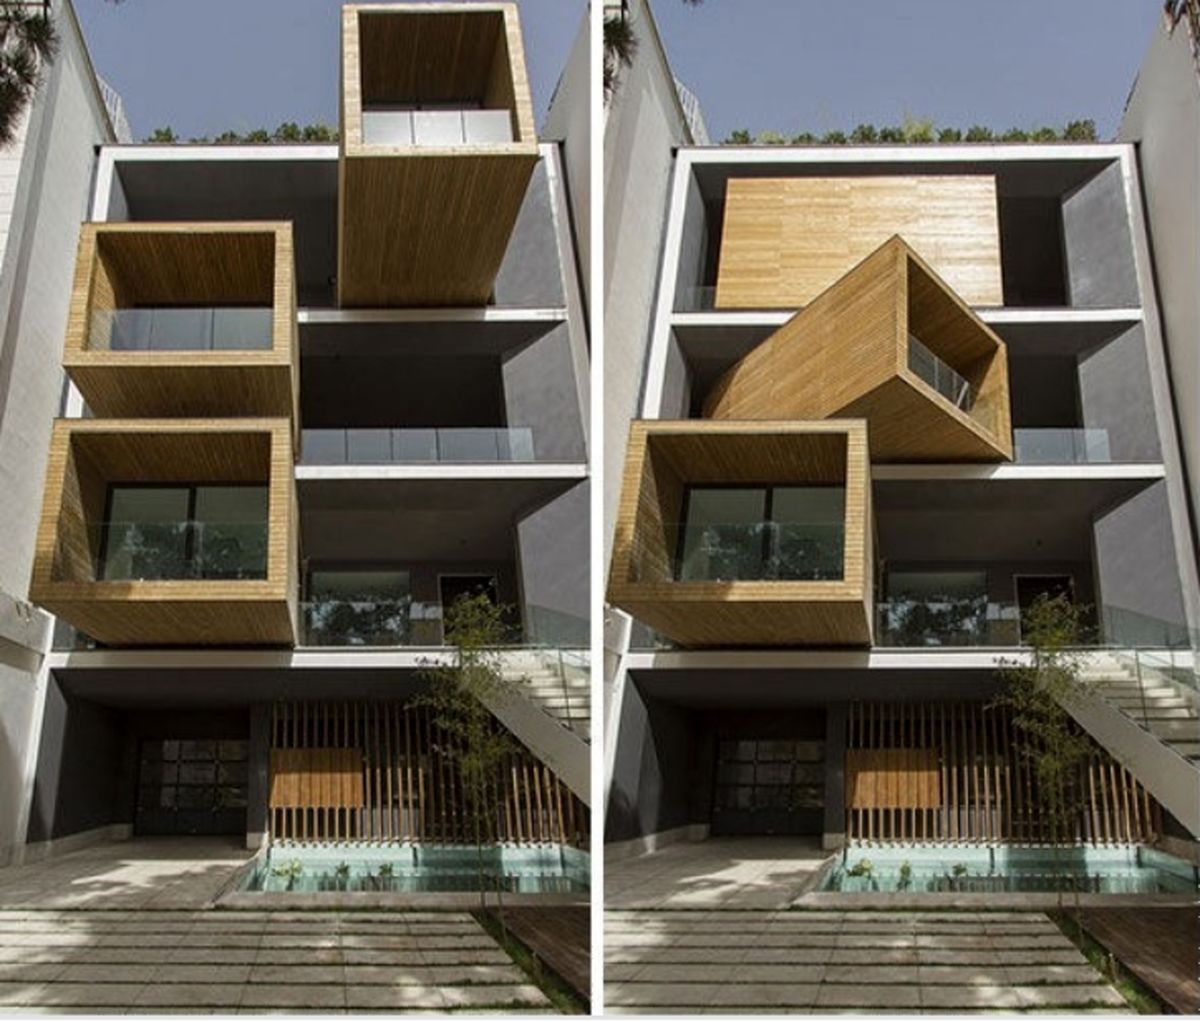 یکی از گرانترین خانه های دنیا در قلب تهران